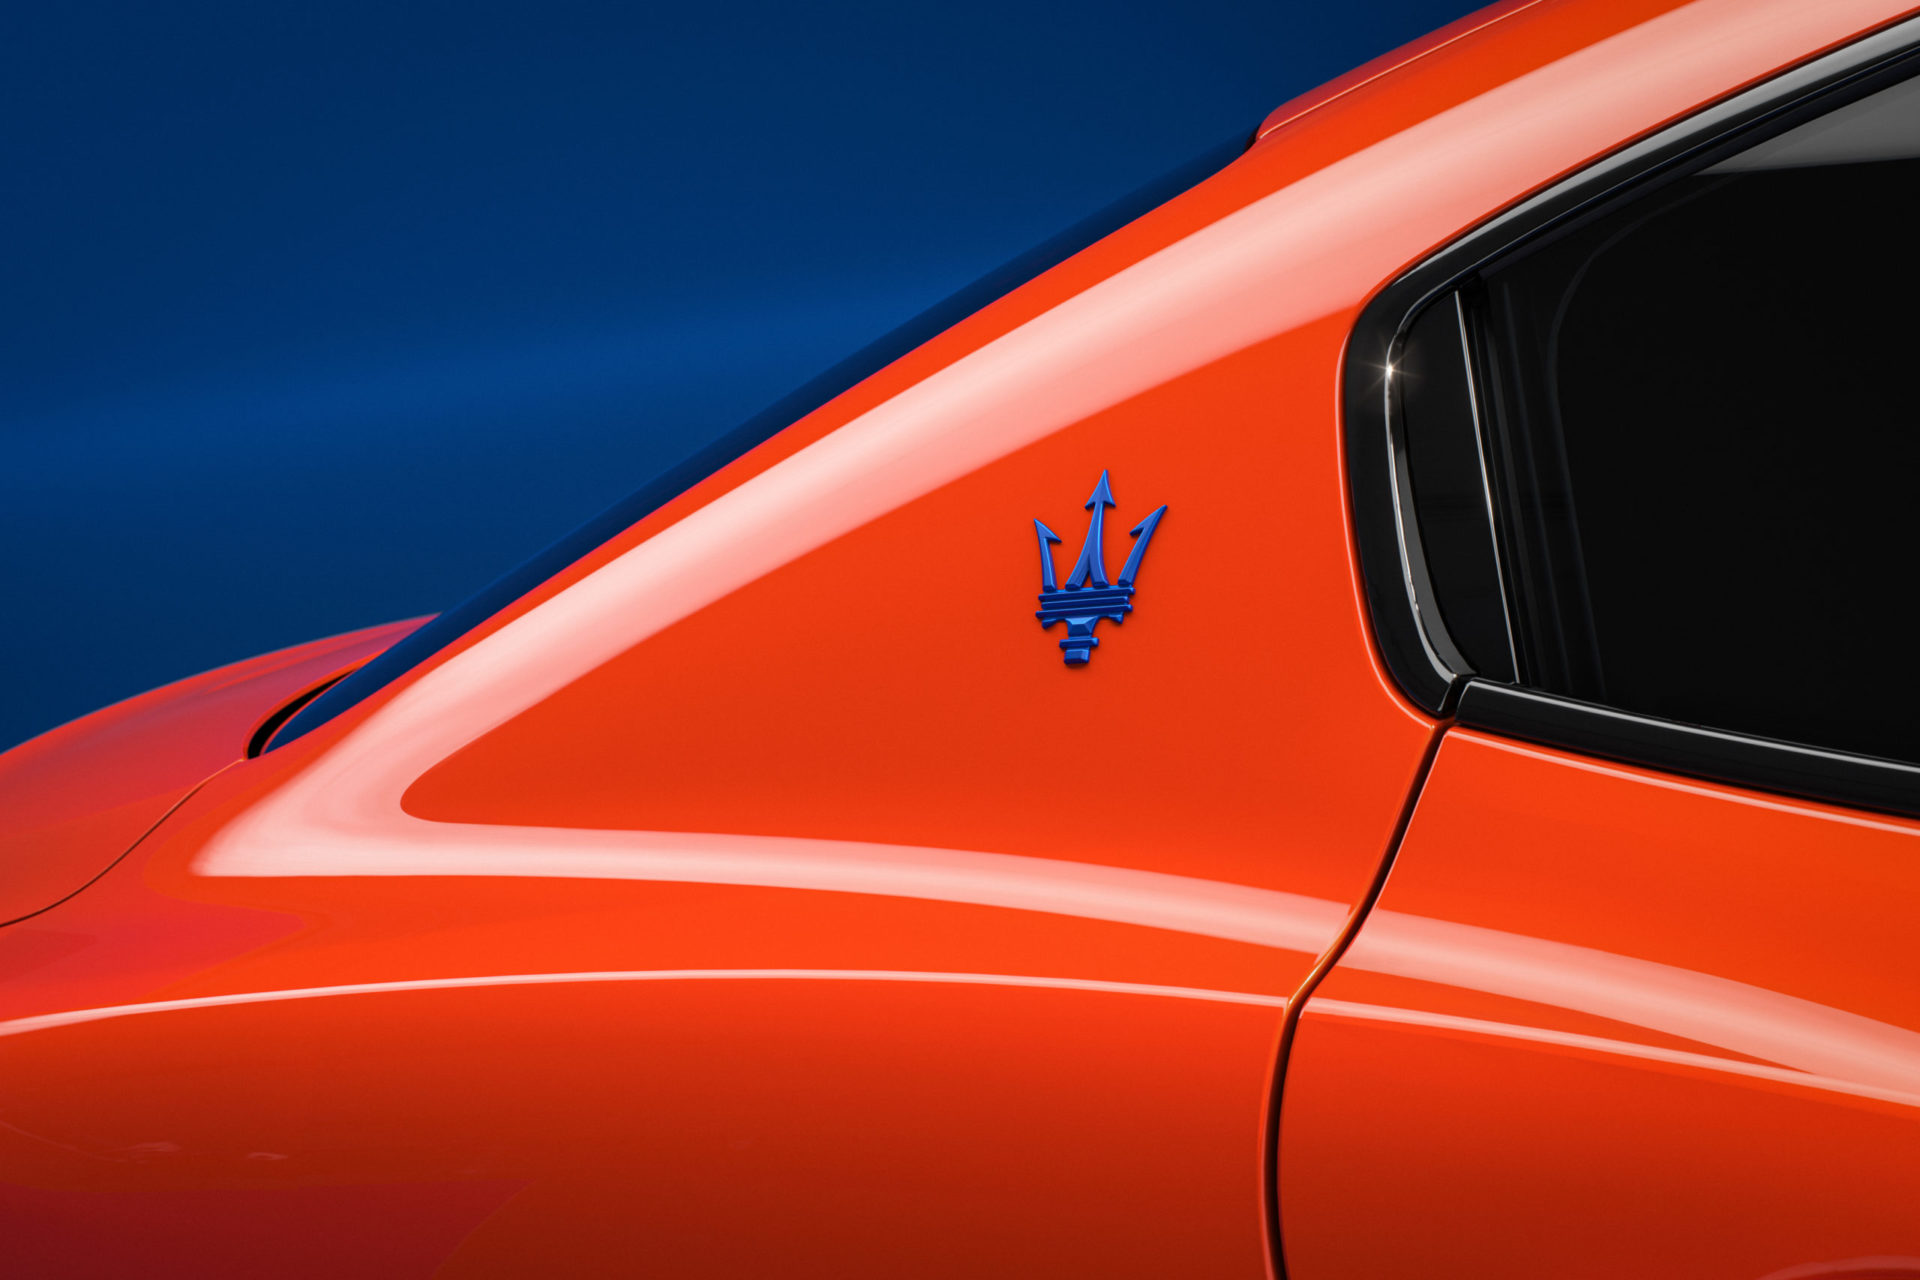 2022 Maserati Ghibli / Levante FTributo | Fanaticar